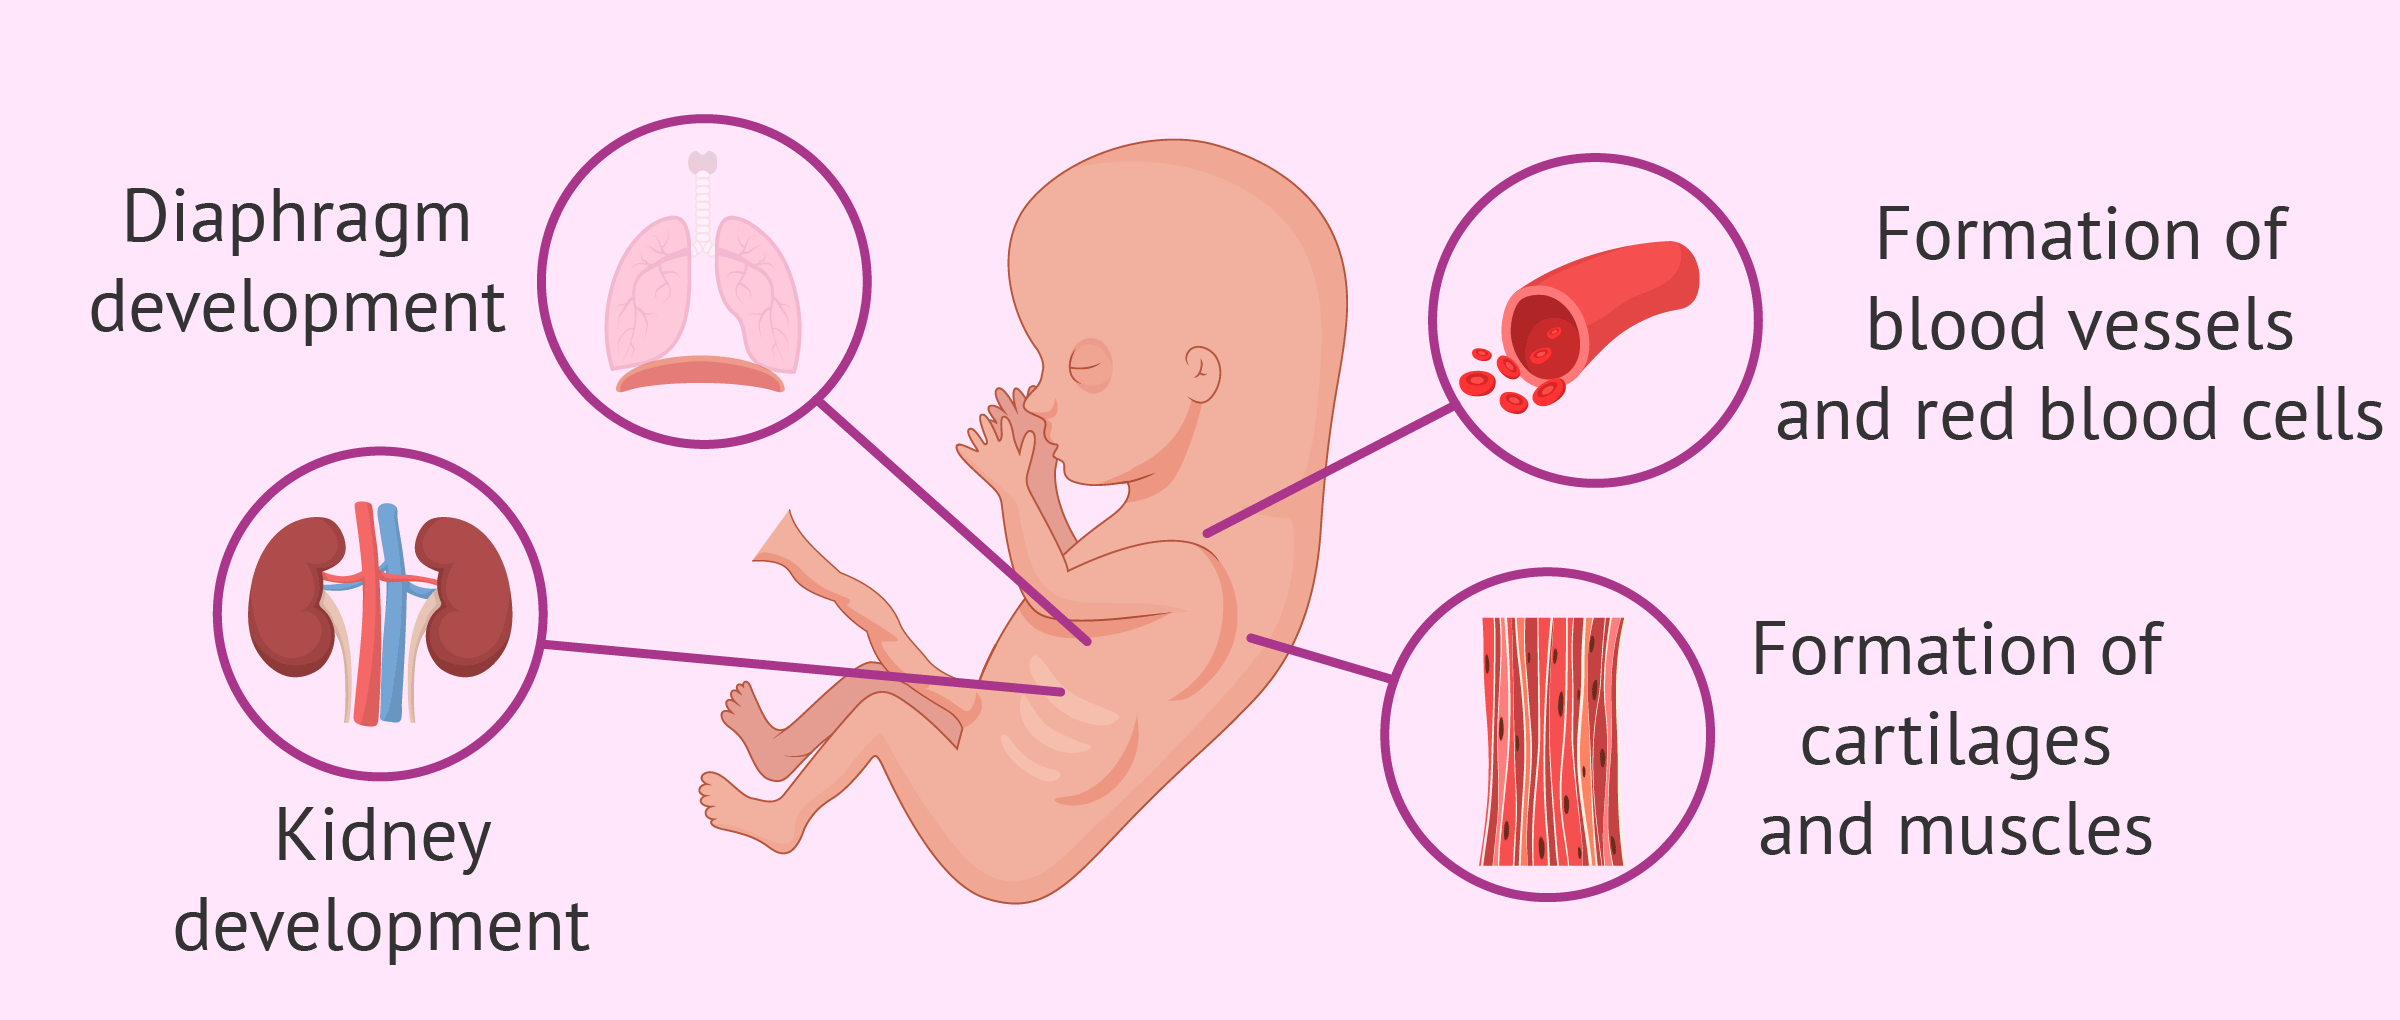 Semana 32 de embarazo síntomas en la madre